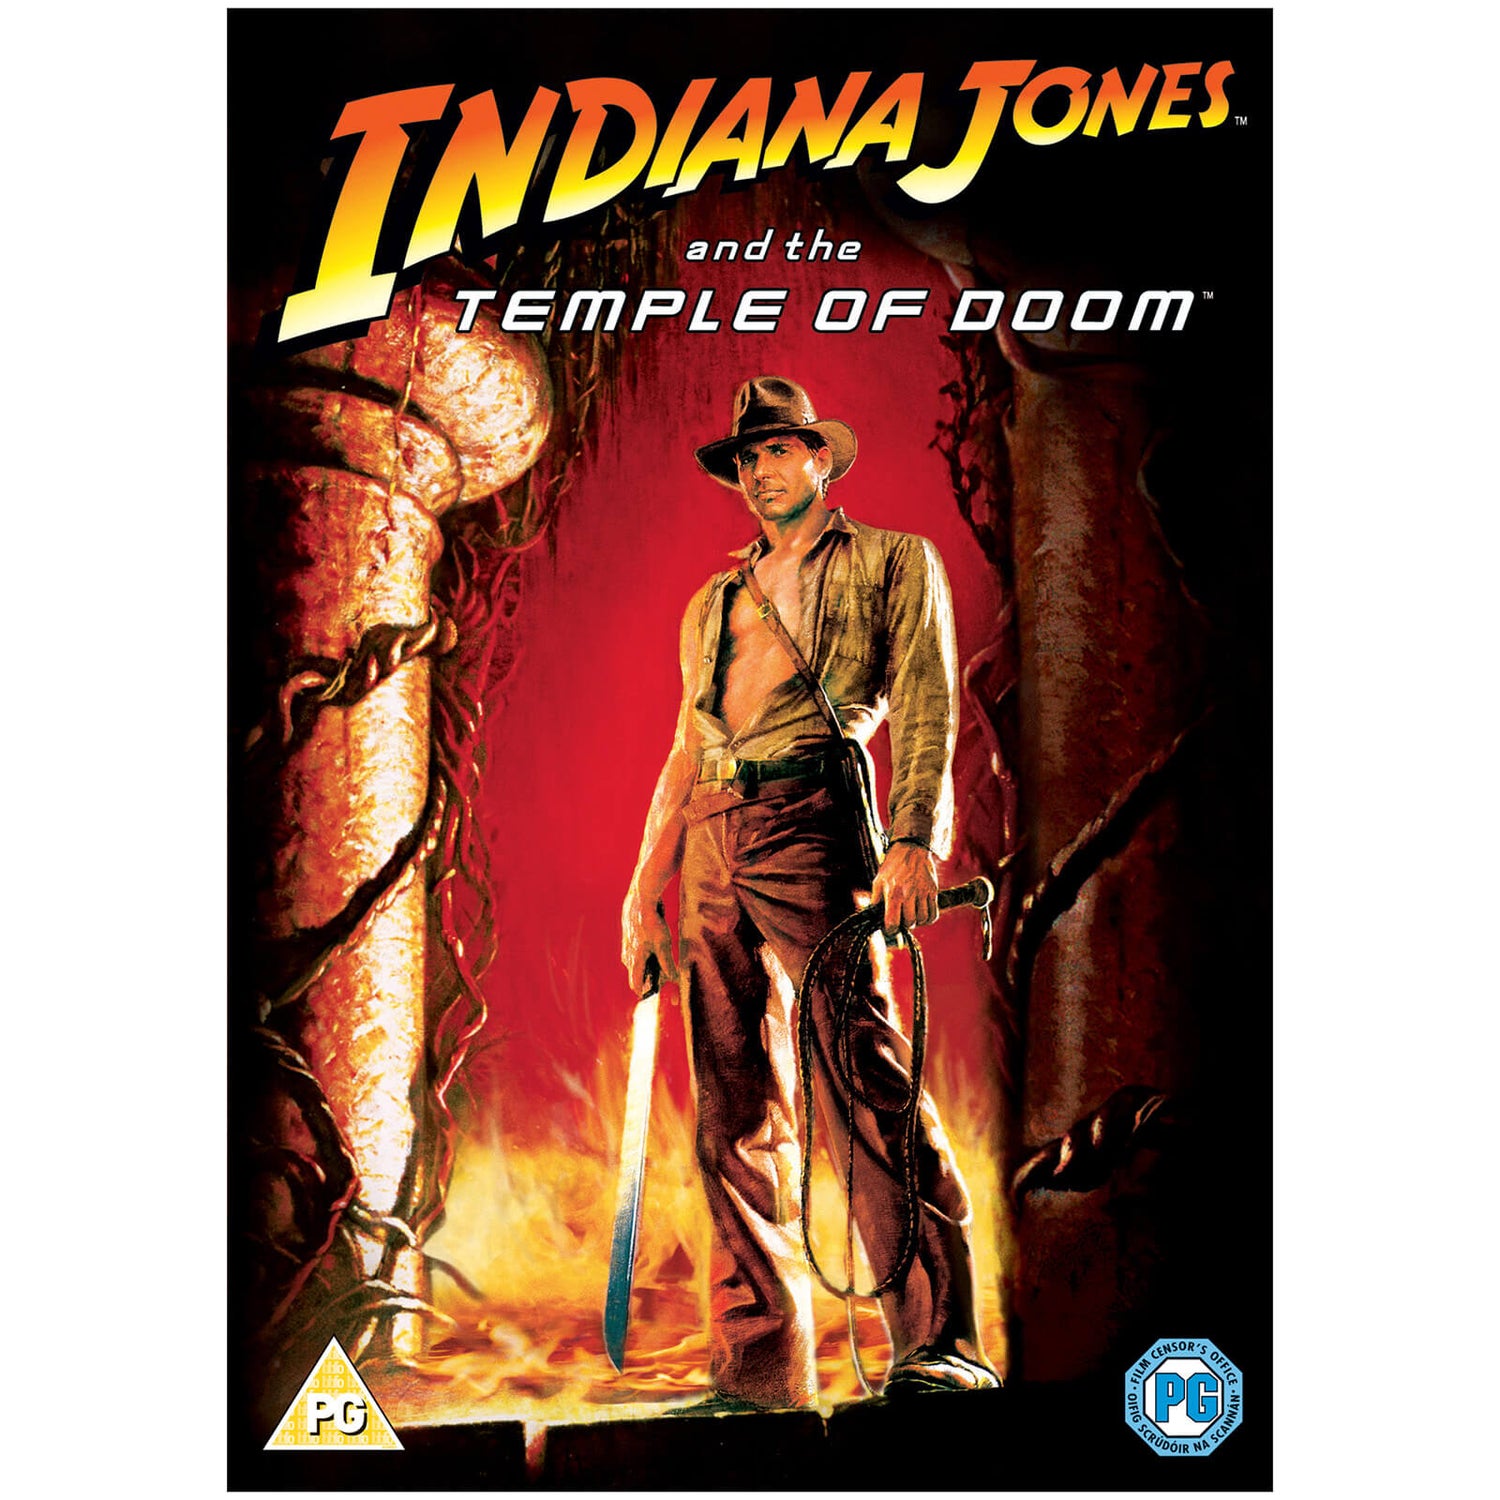 Indiana Jones et le Temple Maudit